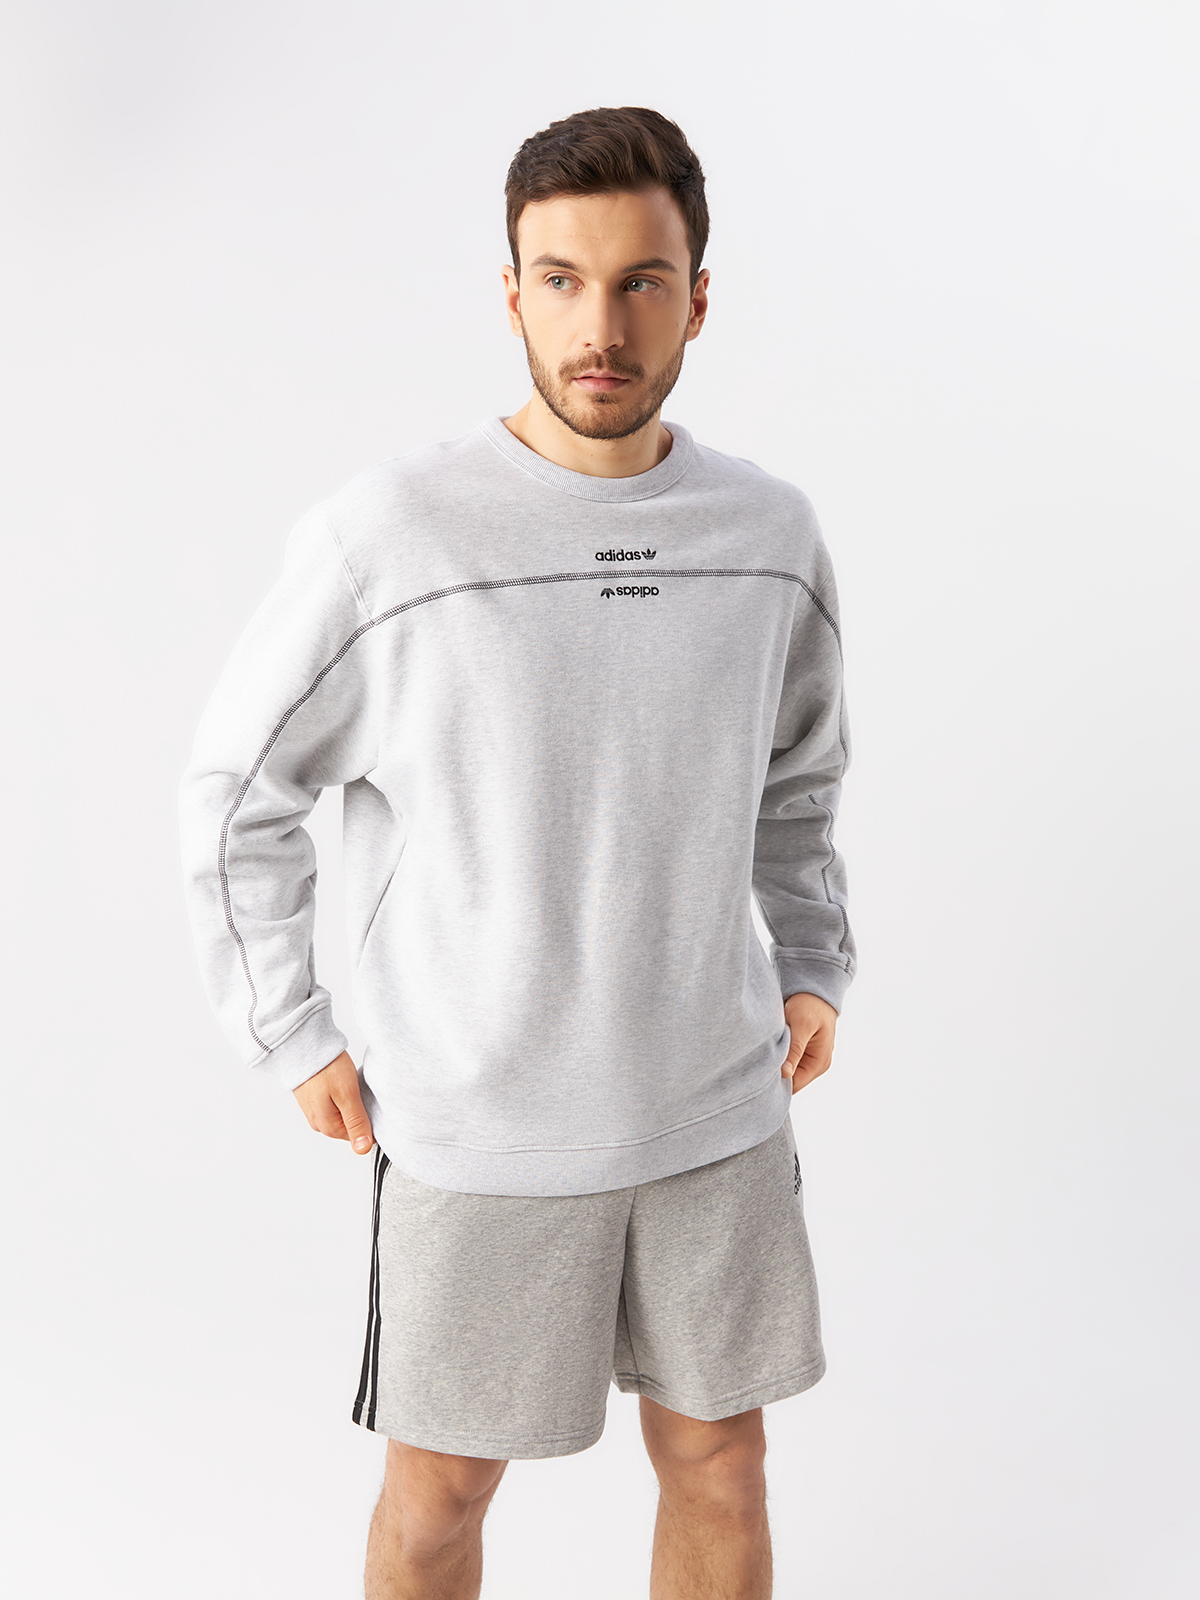 Свитшот мужской Adidas, GD9308, серый, XL